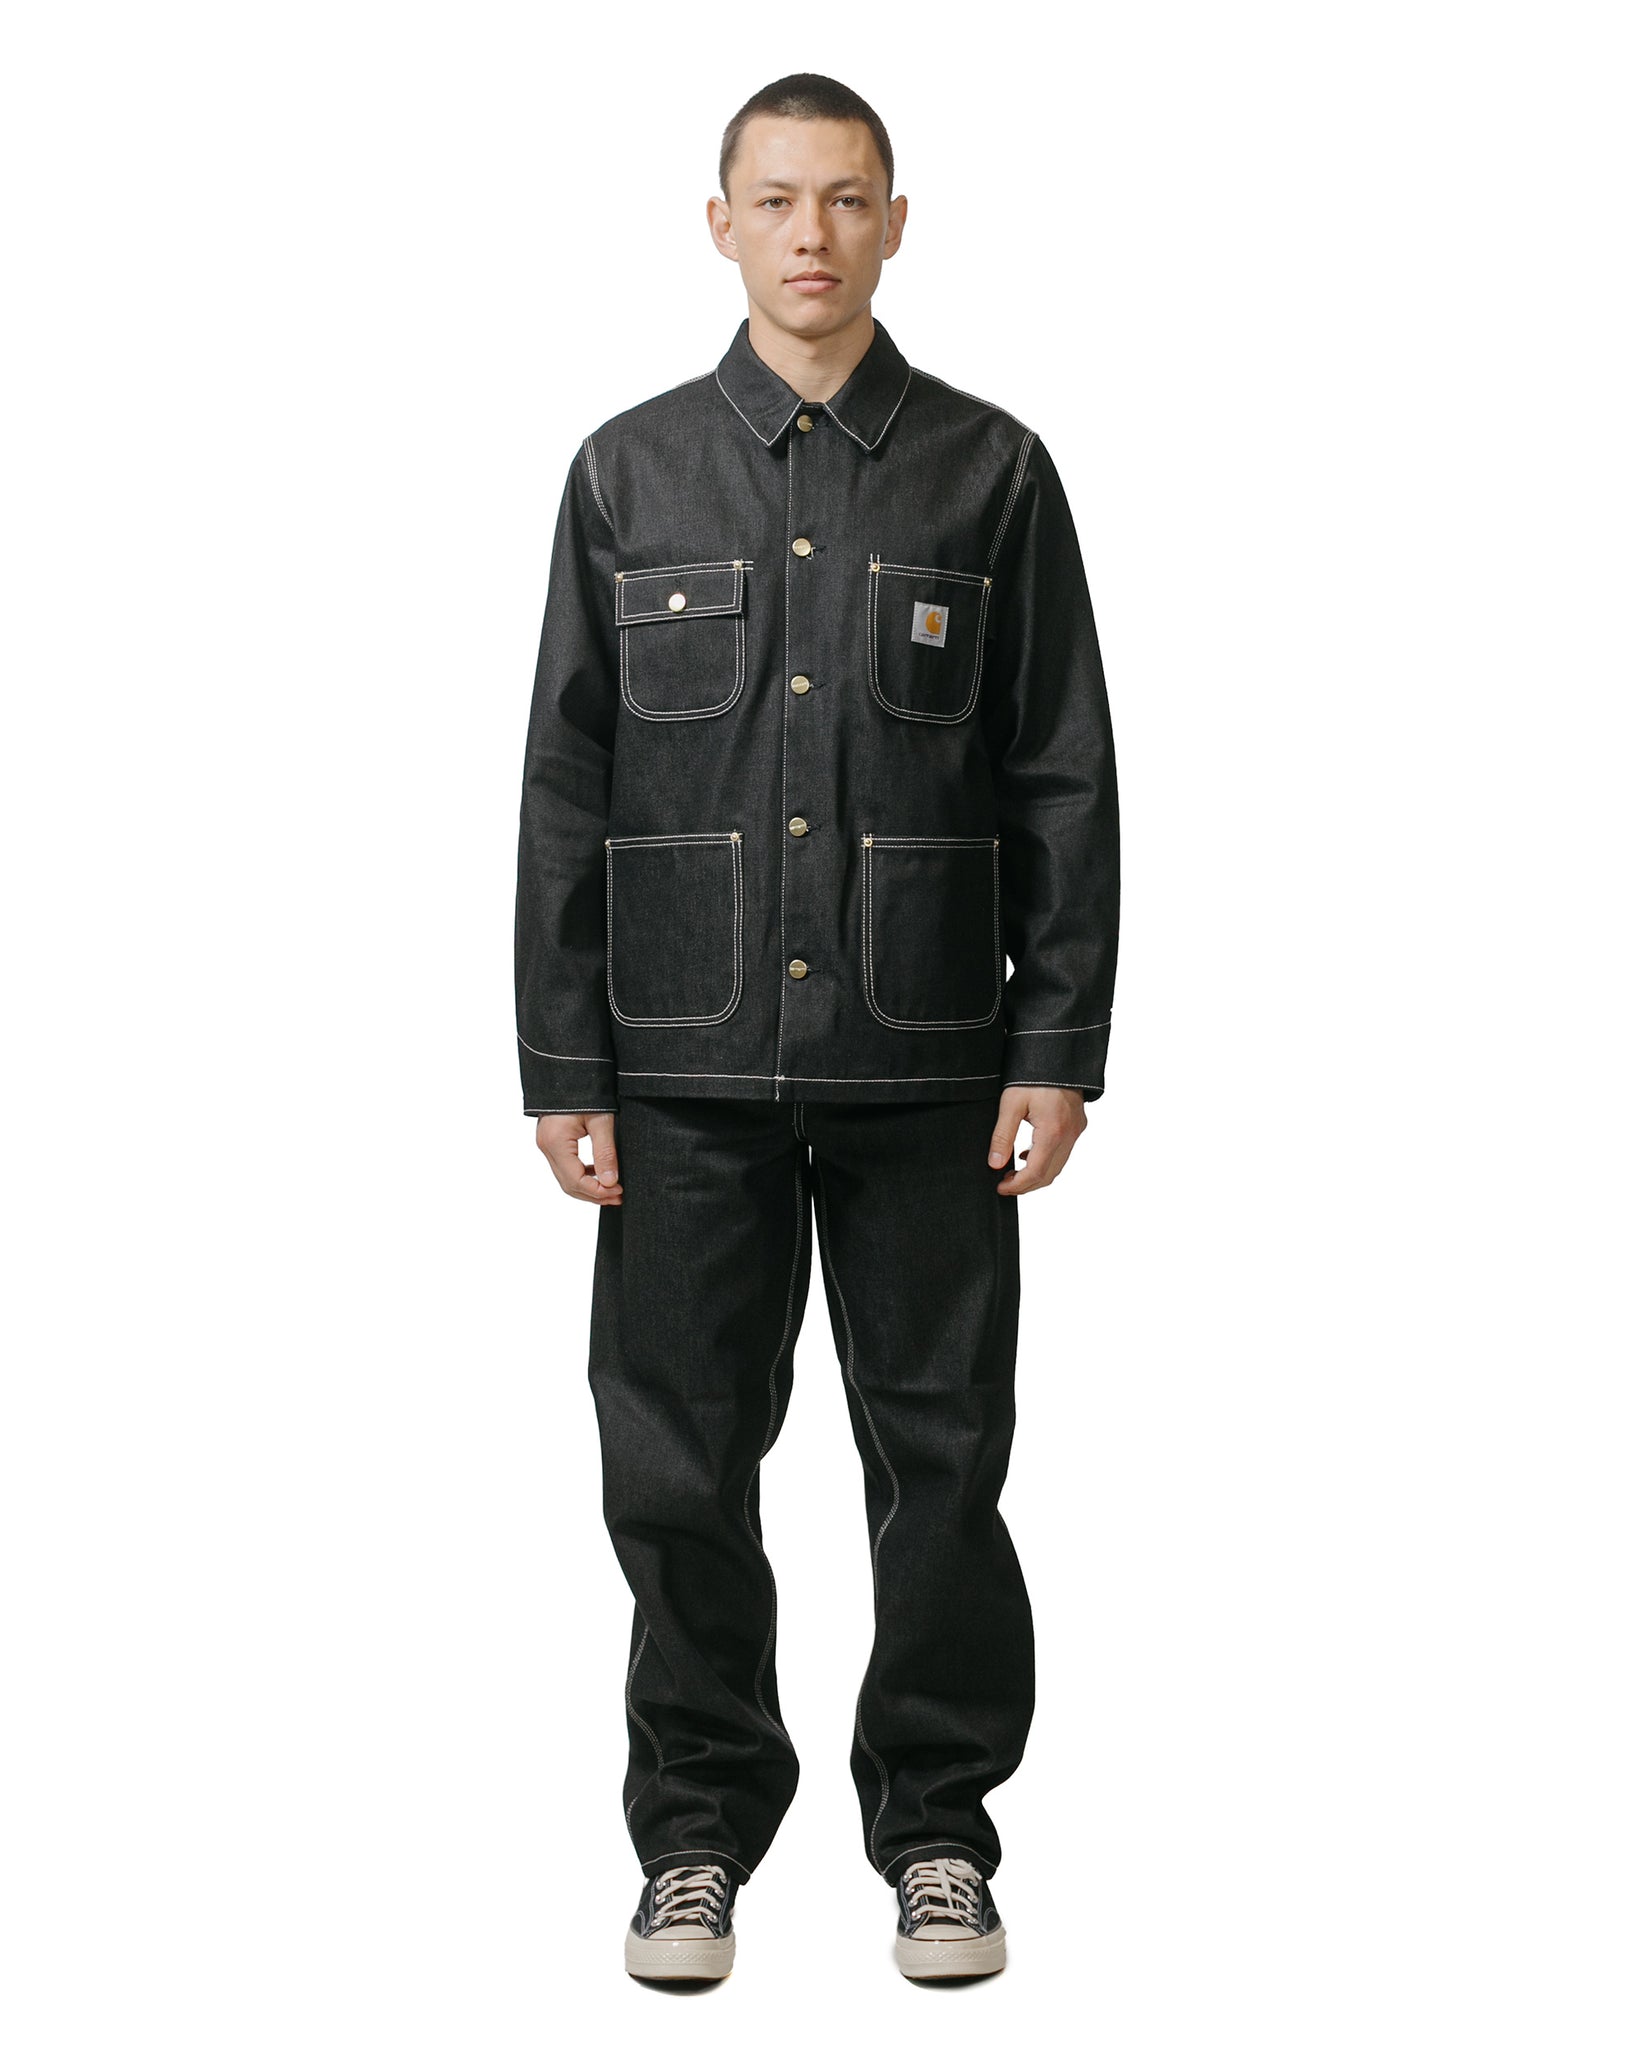 Carhartt W.I.P. OG Chore Coat Denim Black Rigid model full